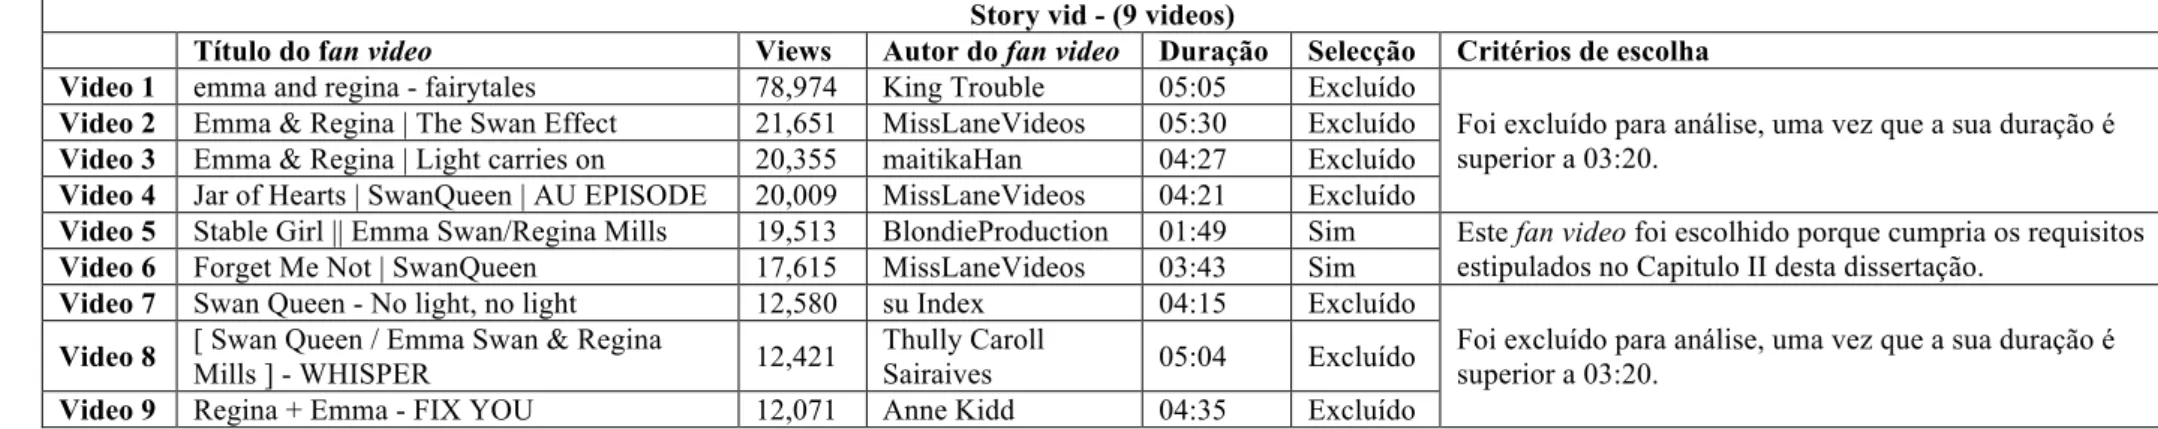 Tabela A. 2.2. Lista de vídeos do subgénero de vidding story vid e respectivos critérios de escolha 